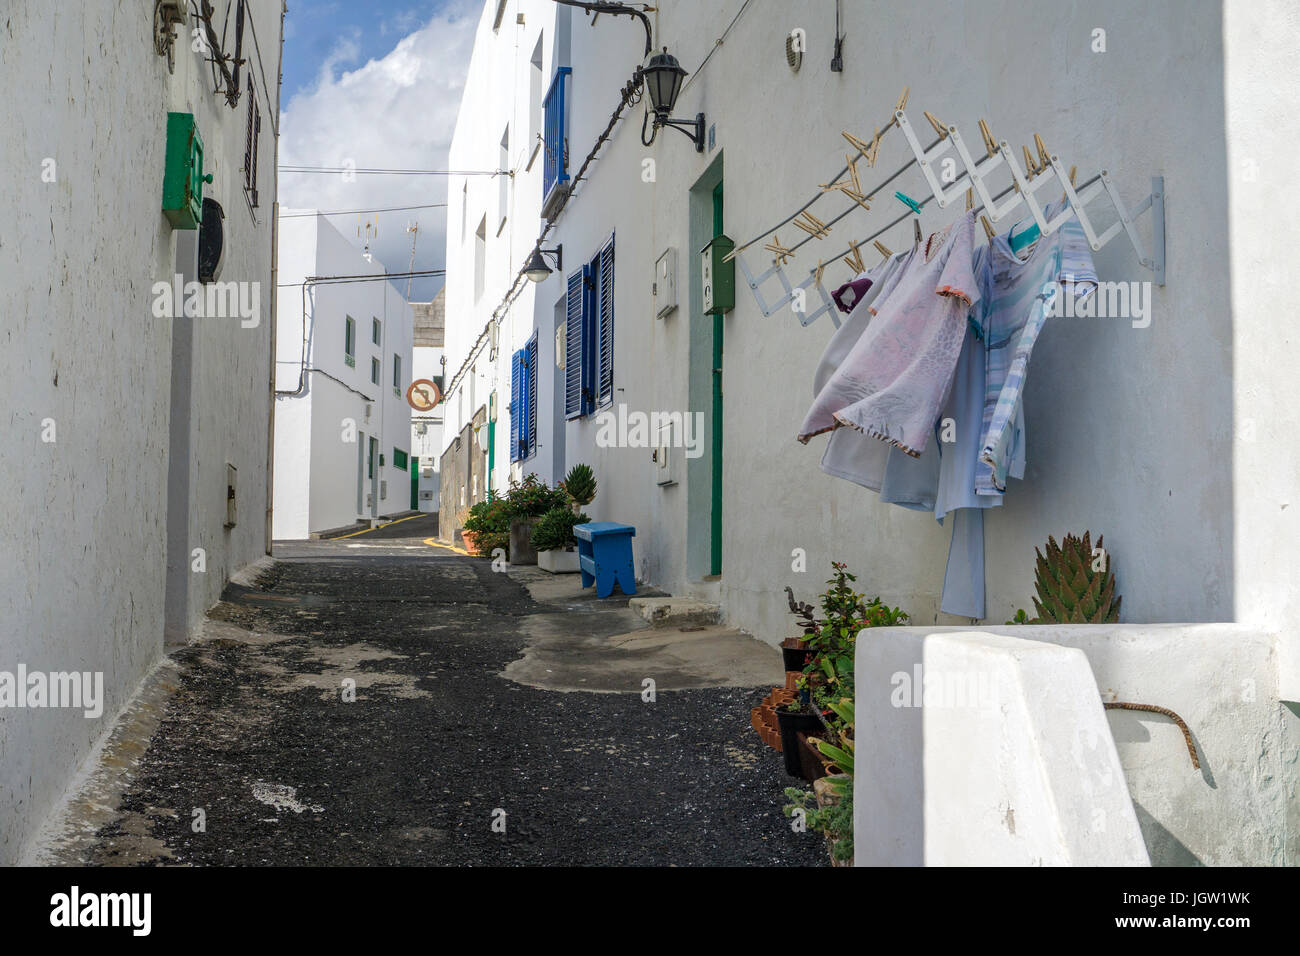 Outhanging à blanchisserie alley, Punta Mujeres, village de pêcheurs au nord de l'île de Lanzarote, Canary Islands, Spain, Europe Banque D'Images